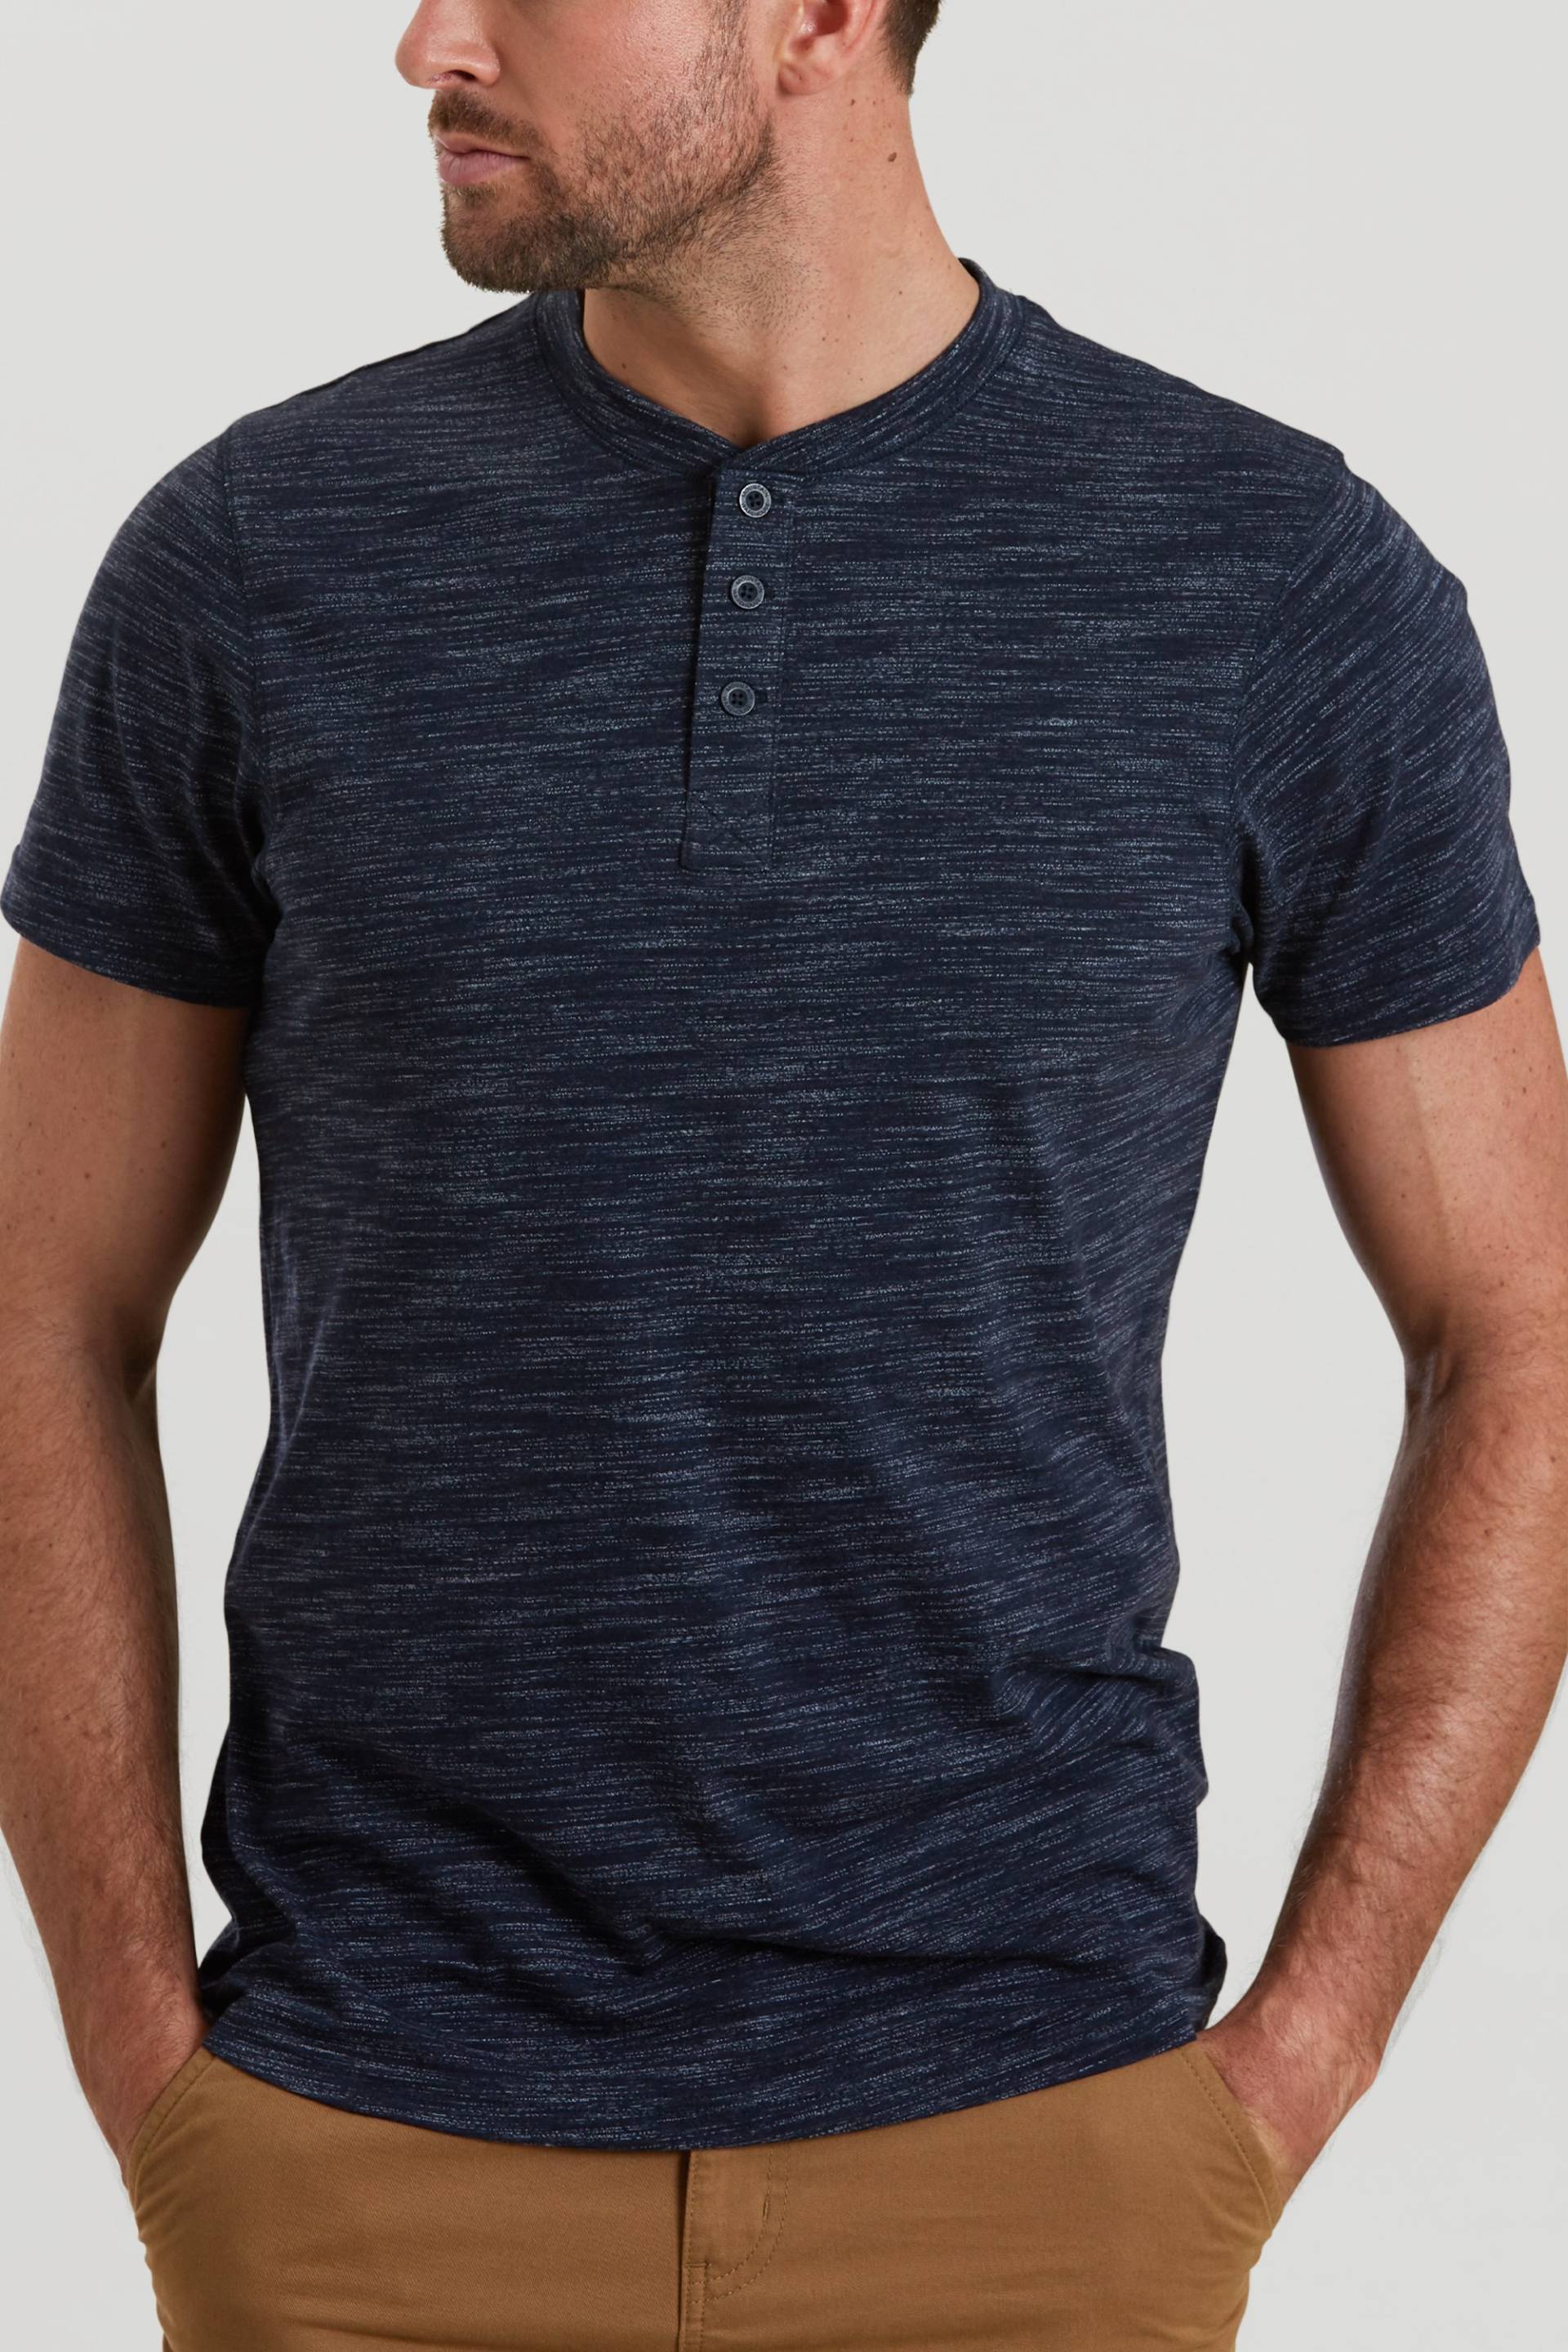 Hasst Henley Herren-T-Shirt - Marineblau von Mountain Warehouse